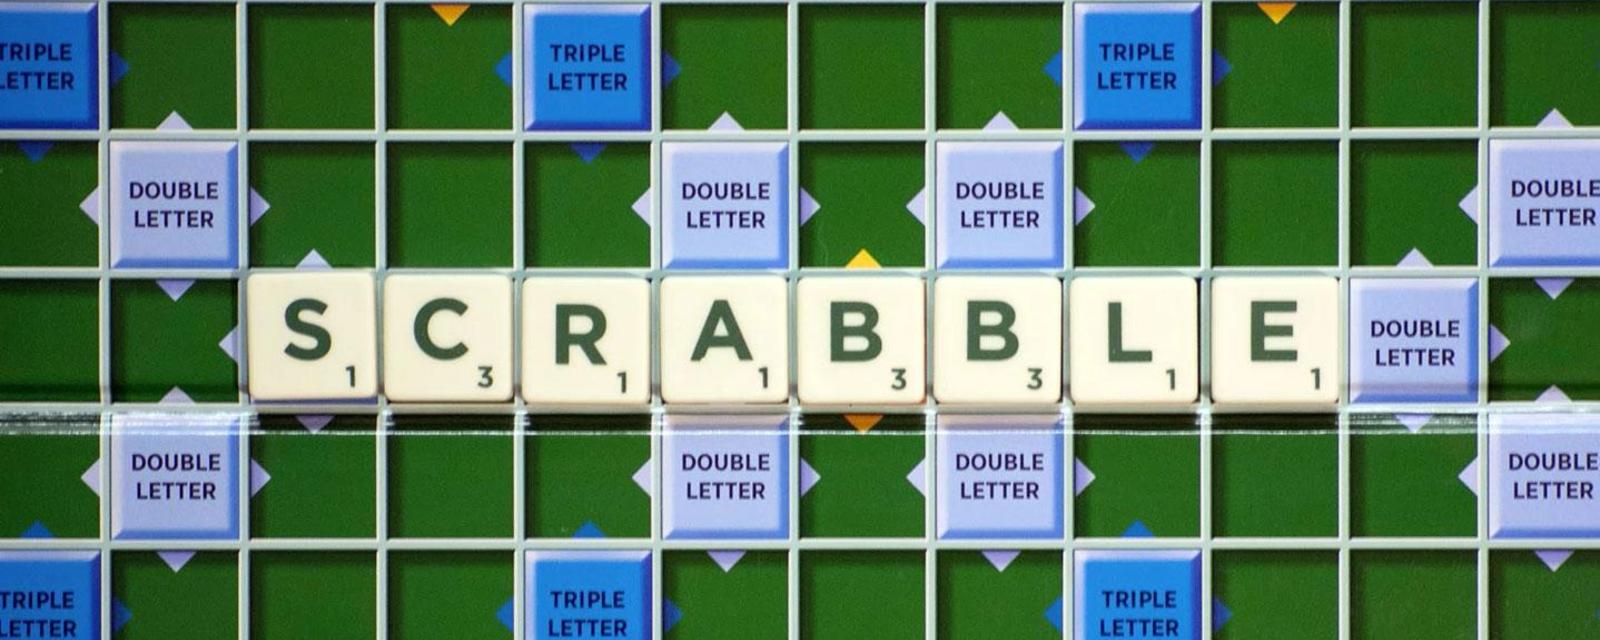 拼字游戏Scrabble不为人知的故事